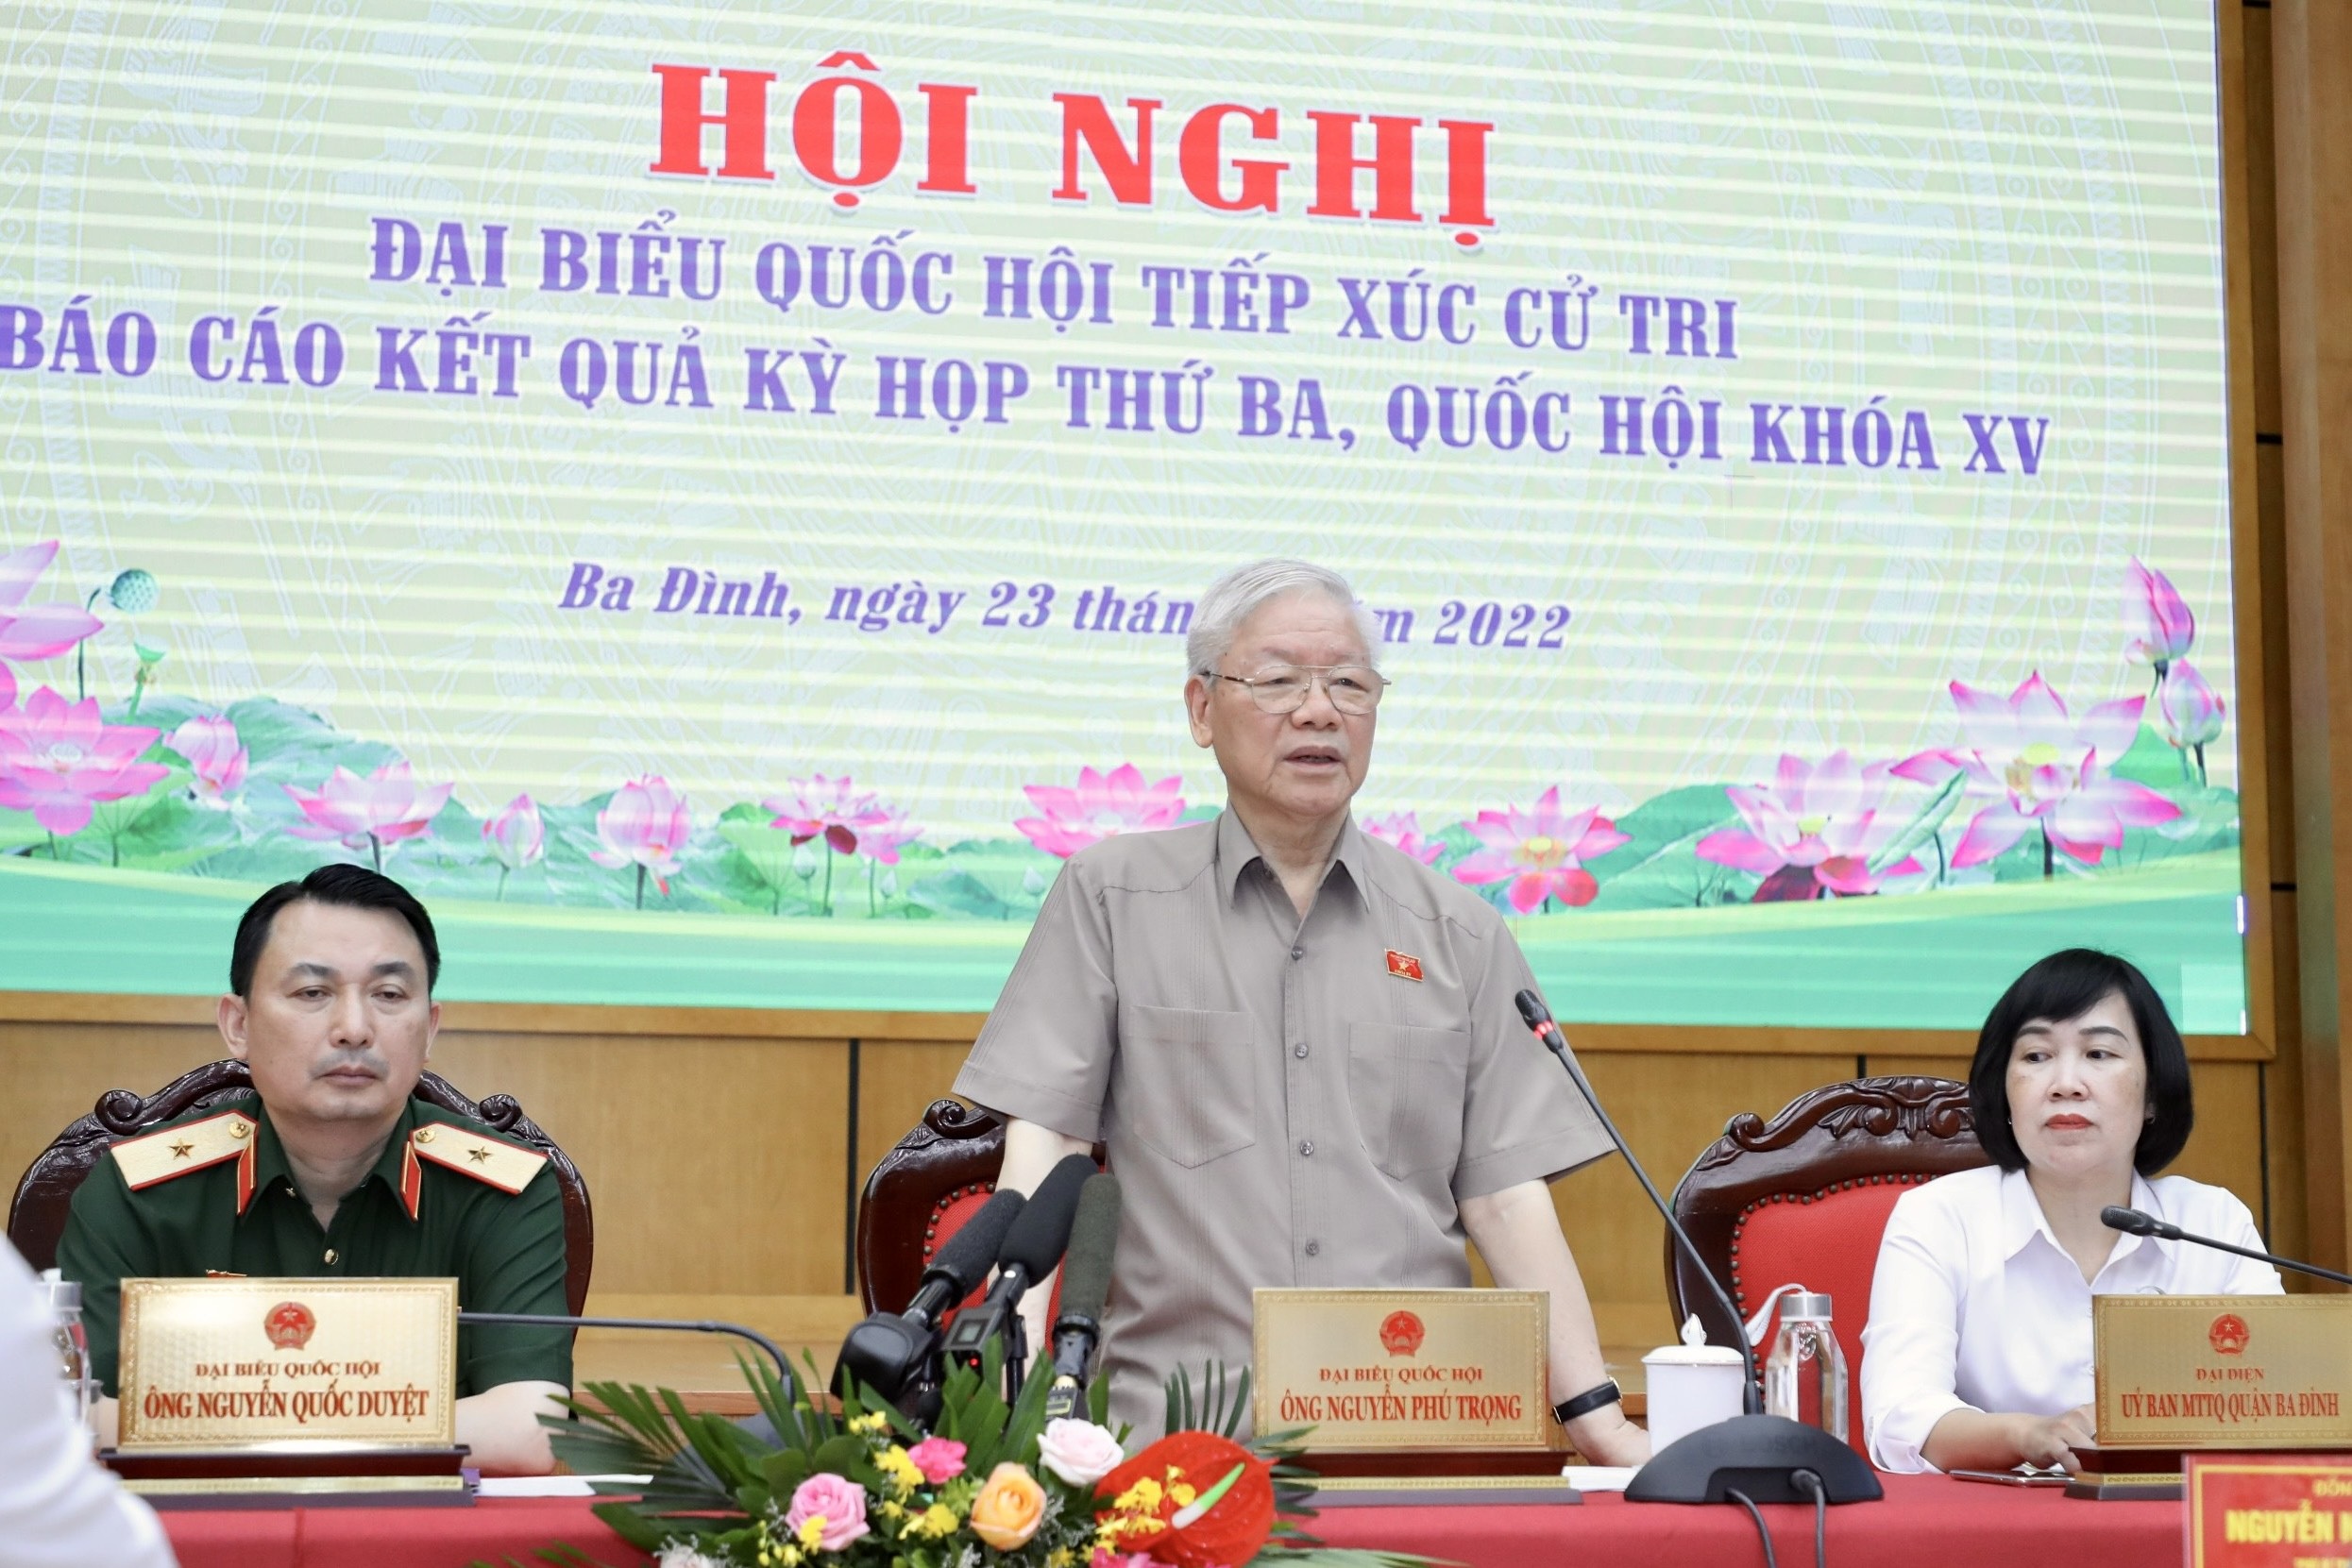 Tổng Bí thư: Ông Chu Ngọc Anh, Nguyễn Thanh Long đều hứa hẹn sẽ sửa chữa - 3